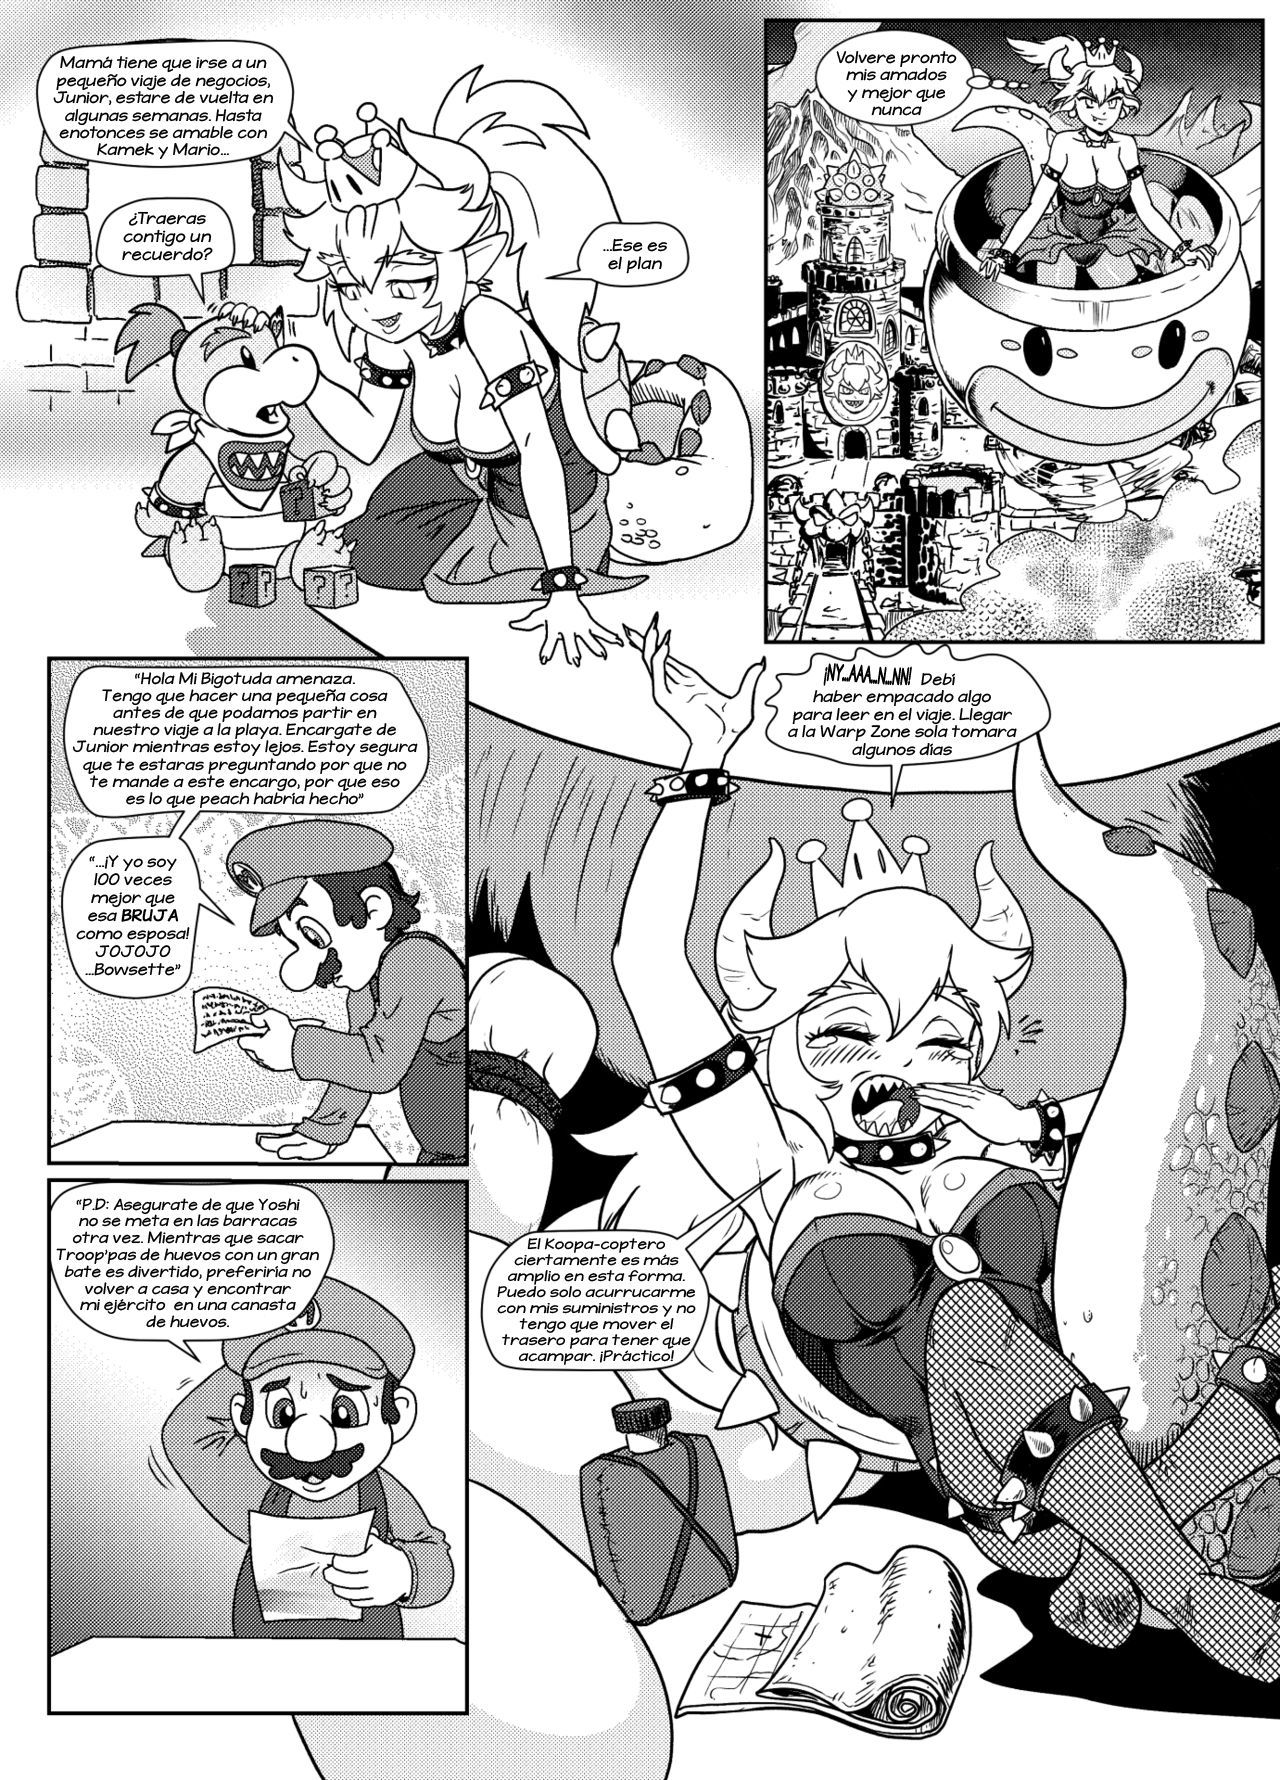 [Pencils] Bowsette Saga Vol.1 Y Vol.2 Completos - Vol.3 En Progreso (Mario Bros.) [Spanish] by Arkoniusx 9